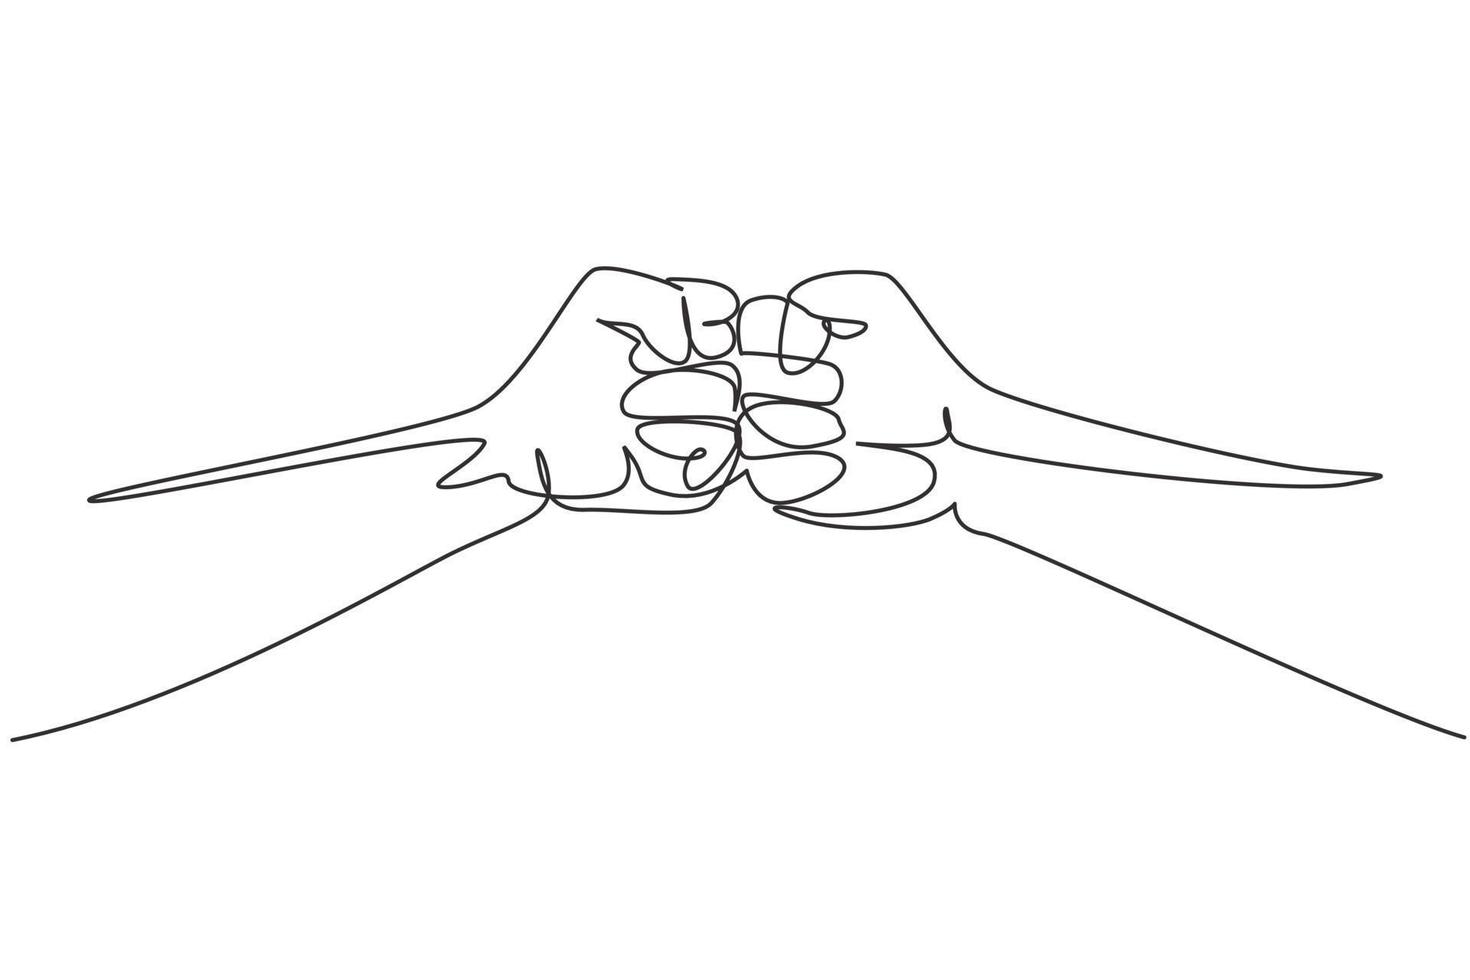 dibujo continuo de una línea, dos manos hacen un golpe de puño. signo o símbolo de poder, golpe, ataque, fuerza. comunicación con gestos con las manos. signos no verbales. Ilustración gráfica de vector de diseño de línea única